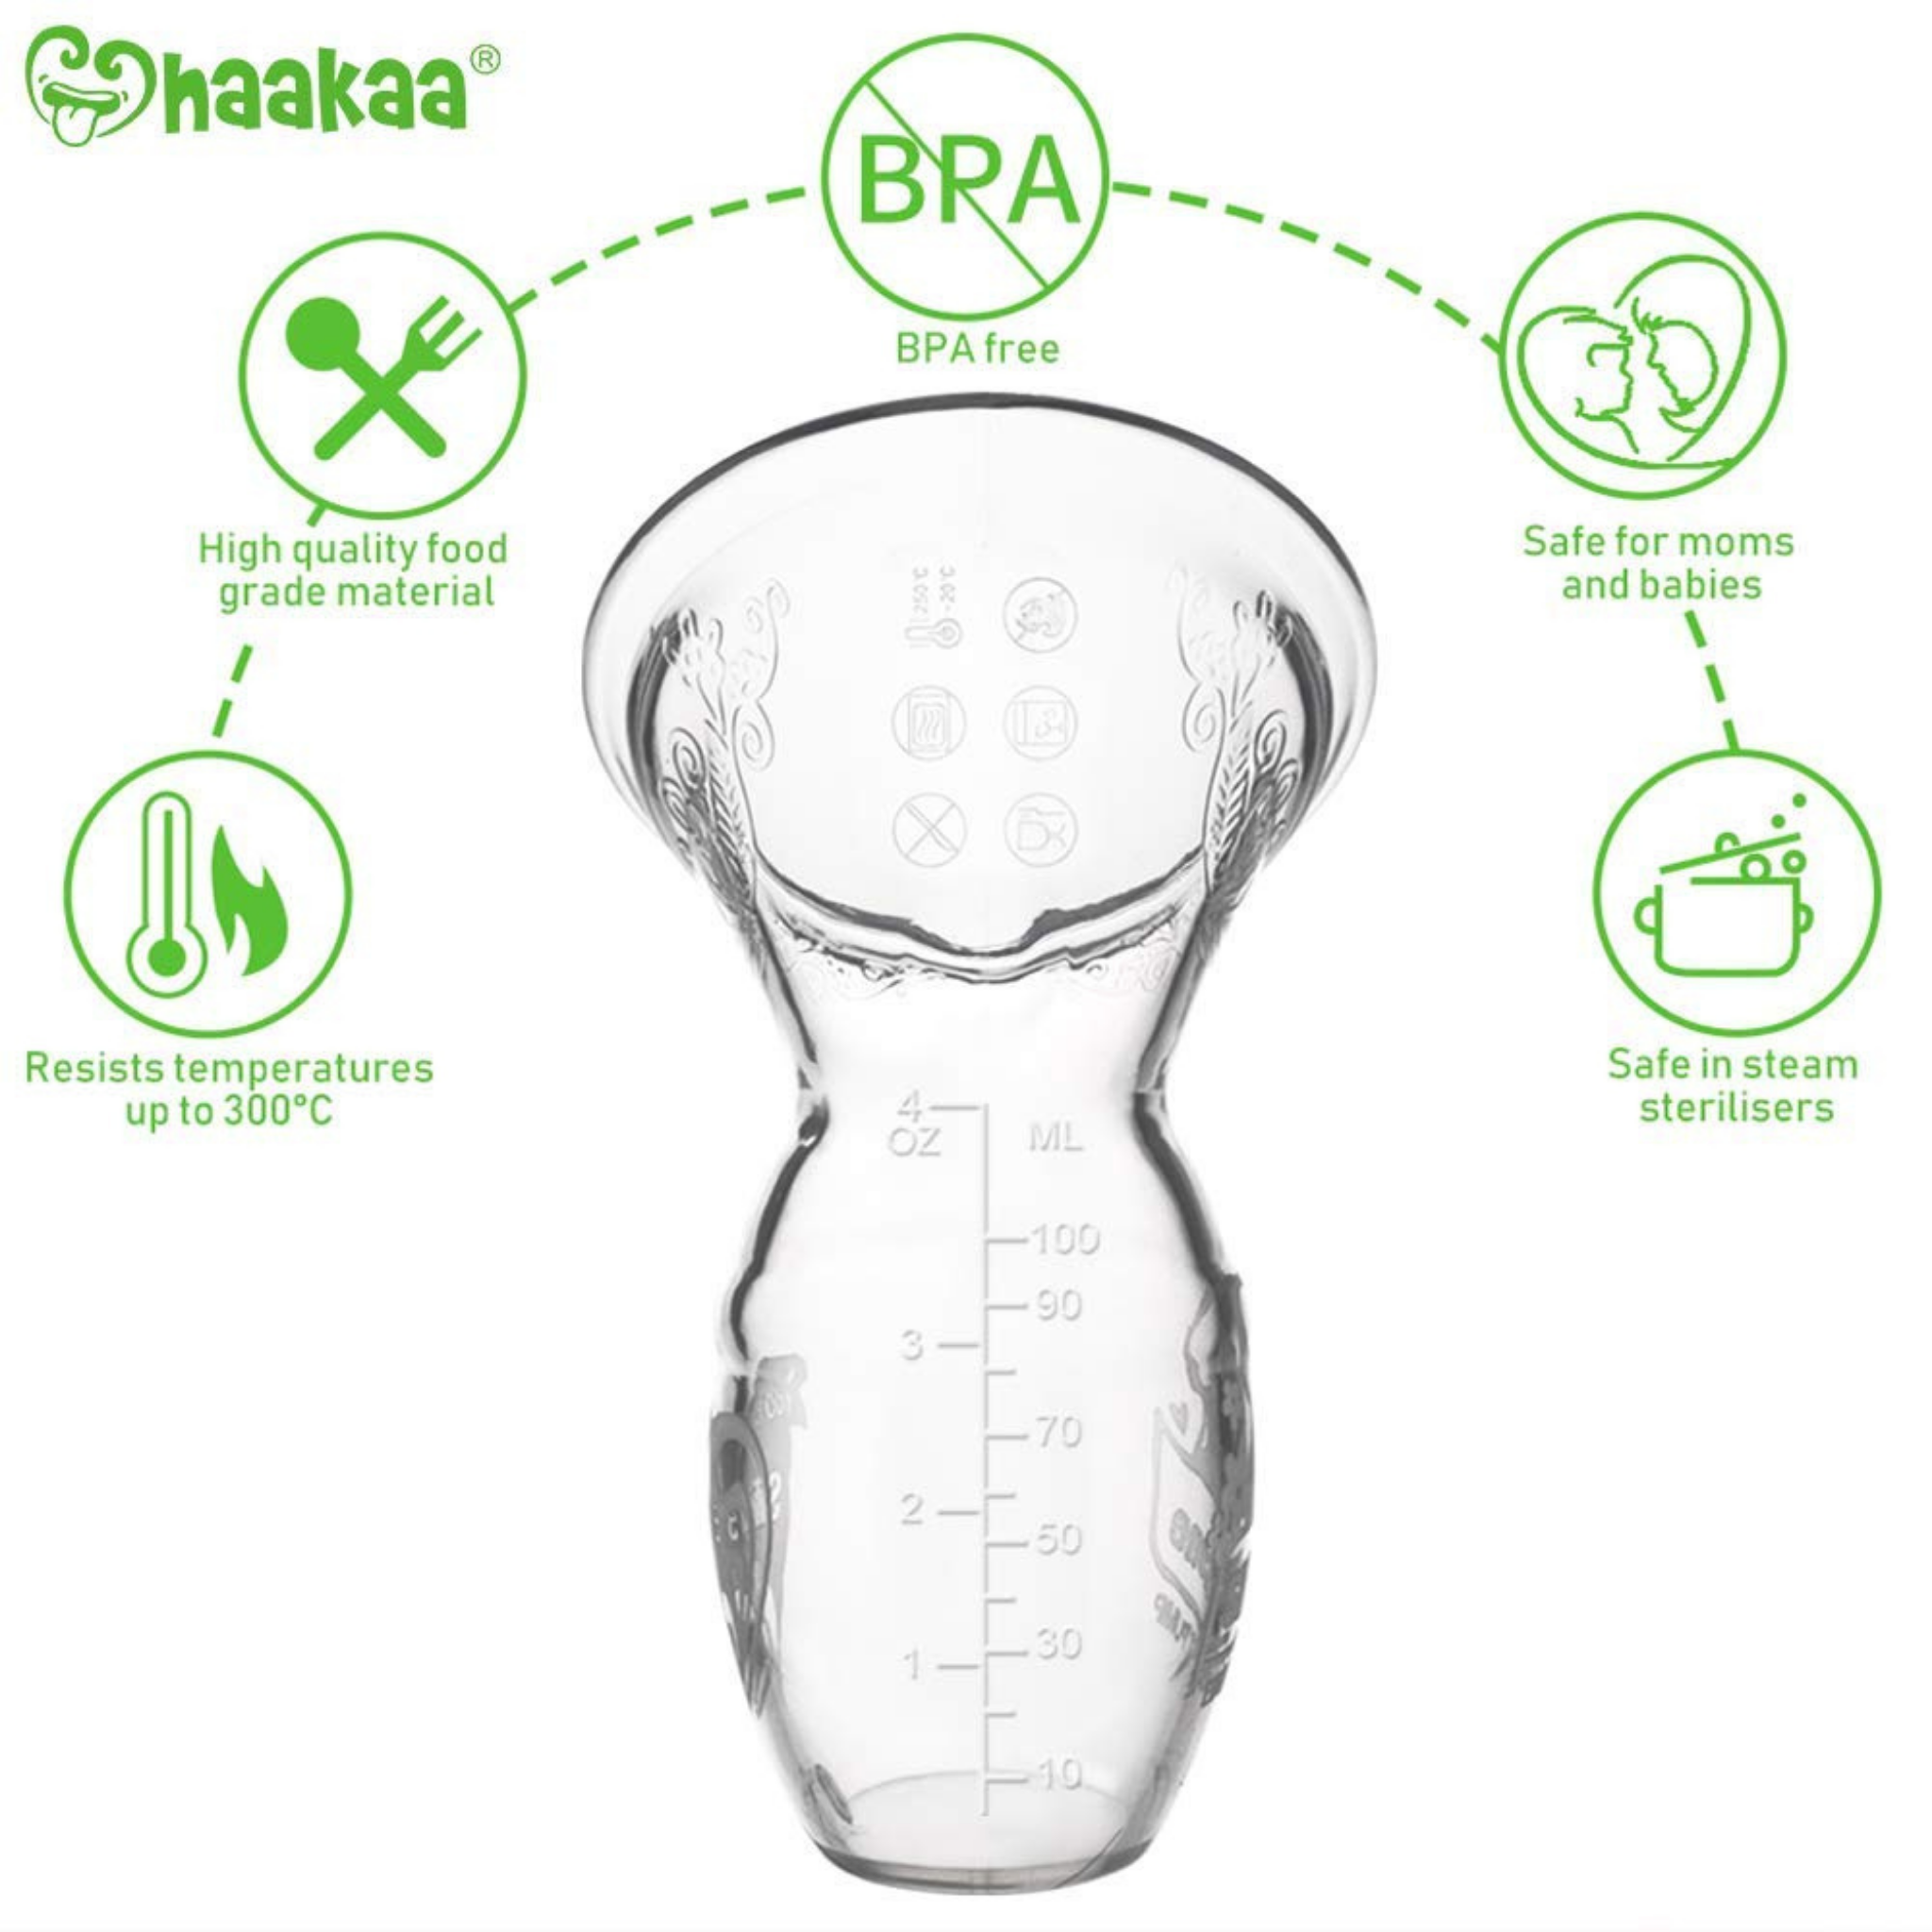  haakaa Manual Breast Pump Silicone Breastpump Milk